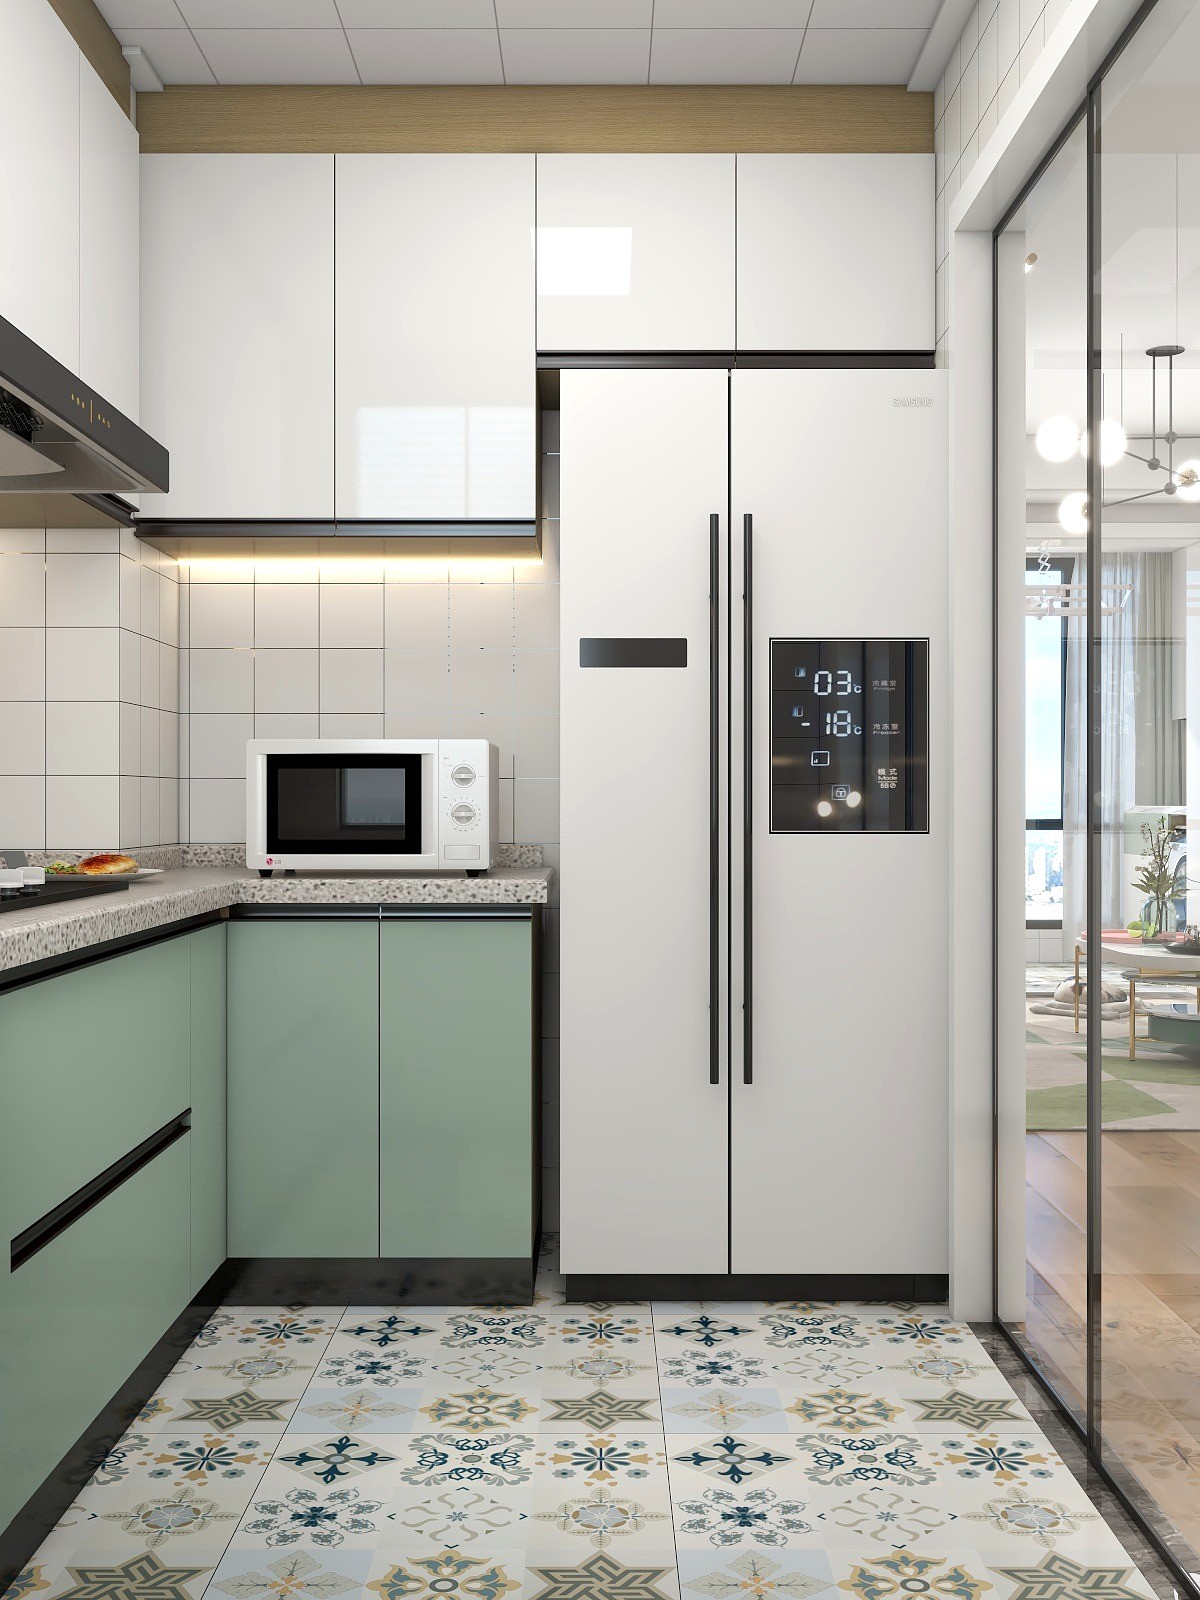 厨房以u型布置,提高空间使用率,整体通铺白色瓷砖,简单轻盈